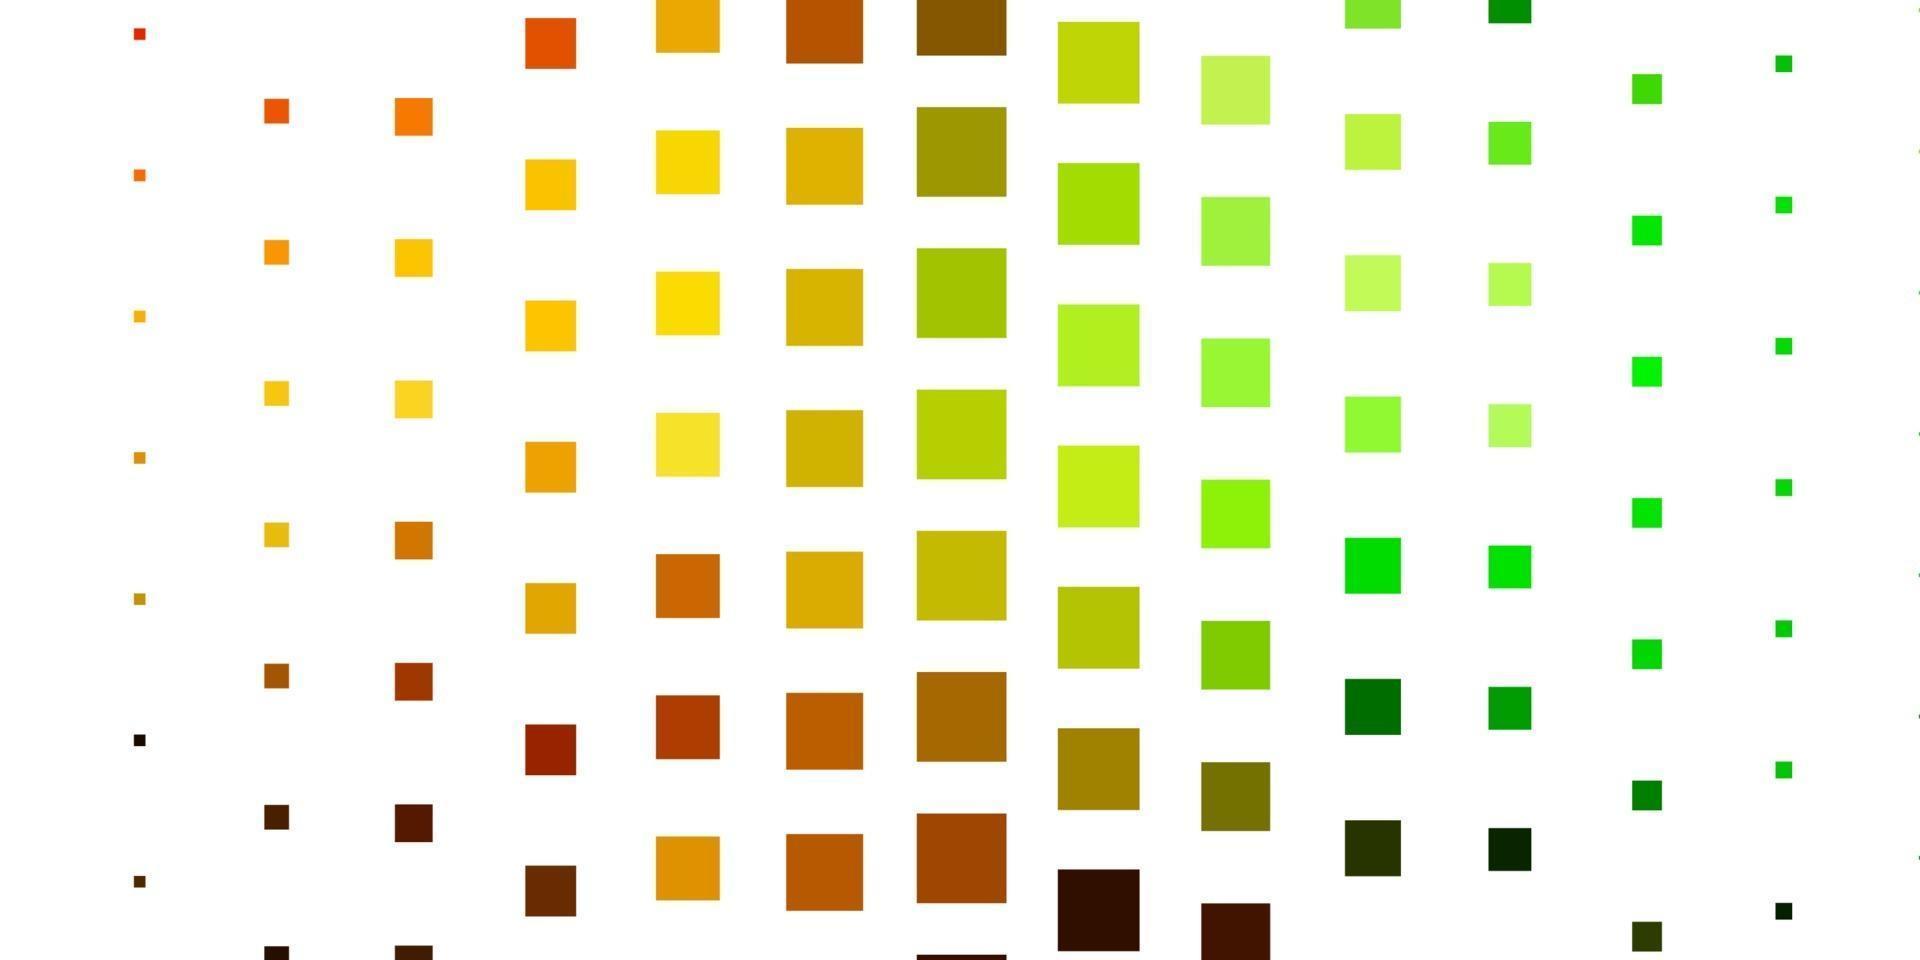 lichtgroen, geel vector sjabloon in rechthoeken.